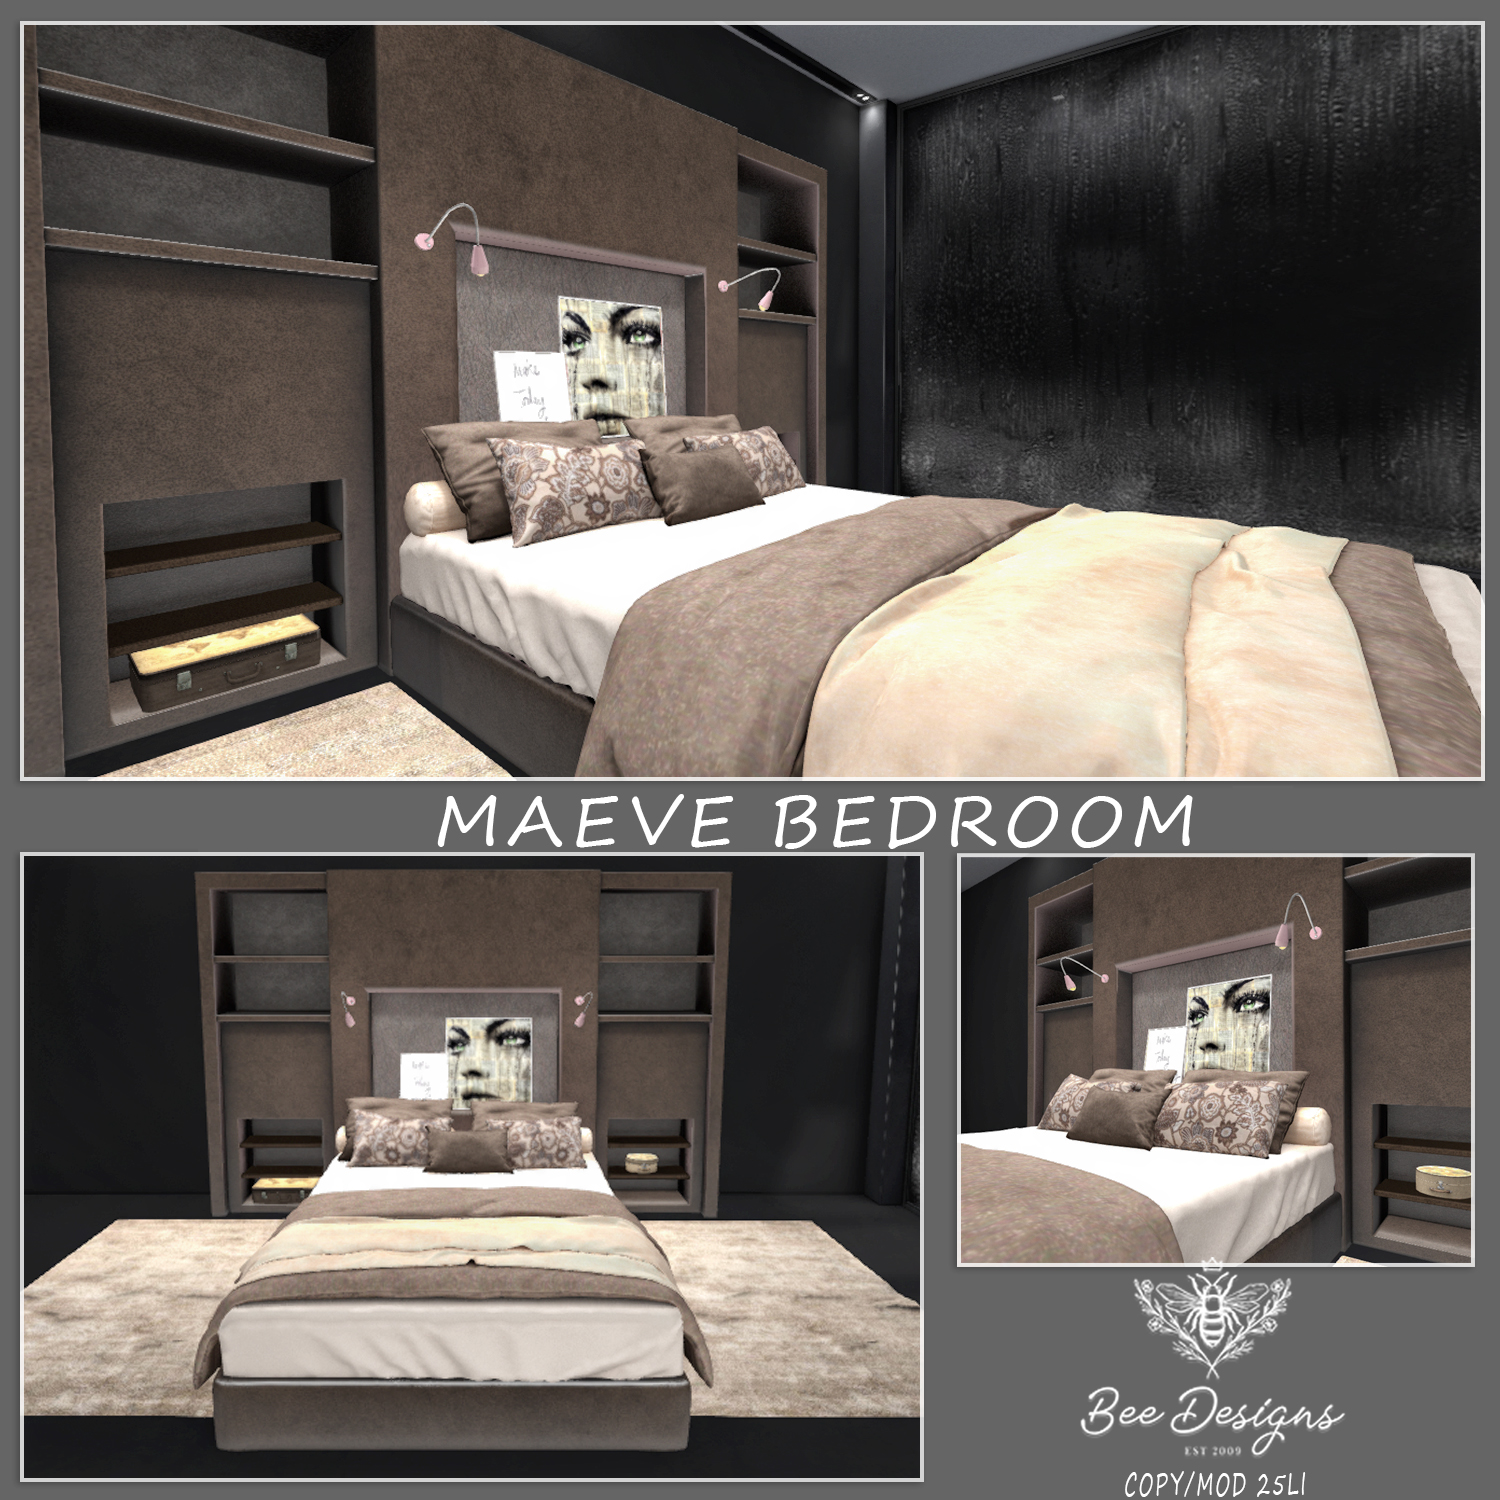 Bee Designs – Maeve Bedroom